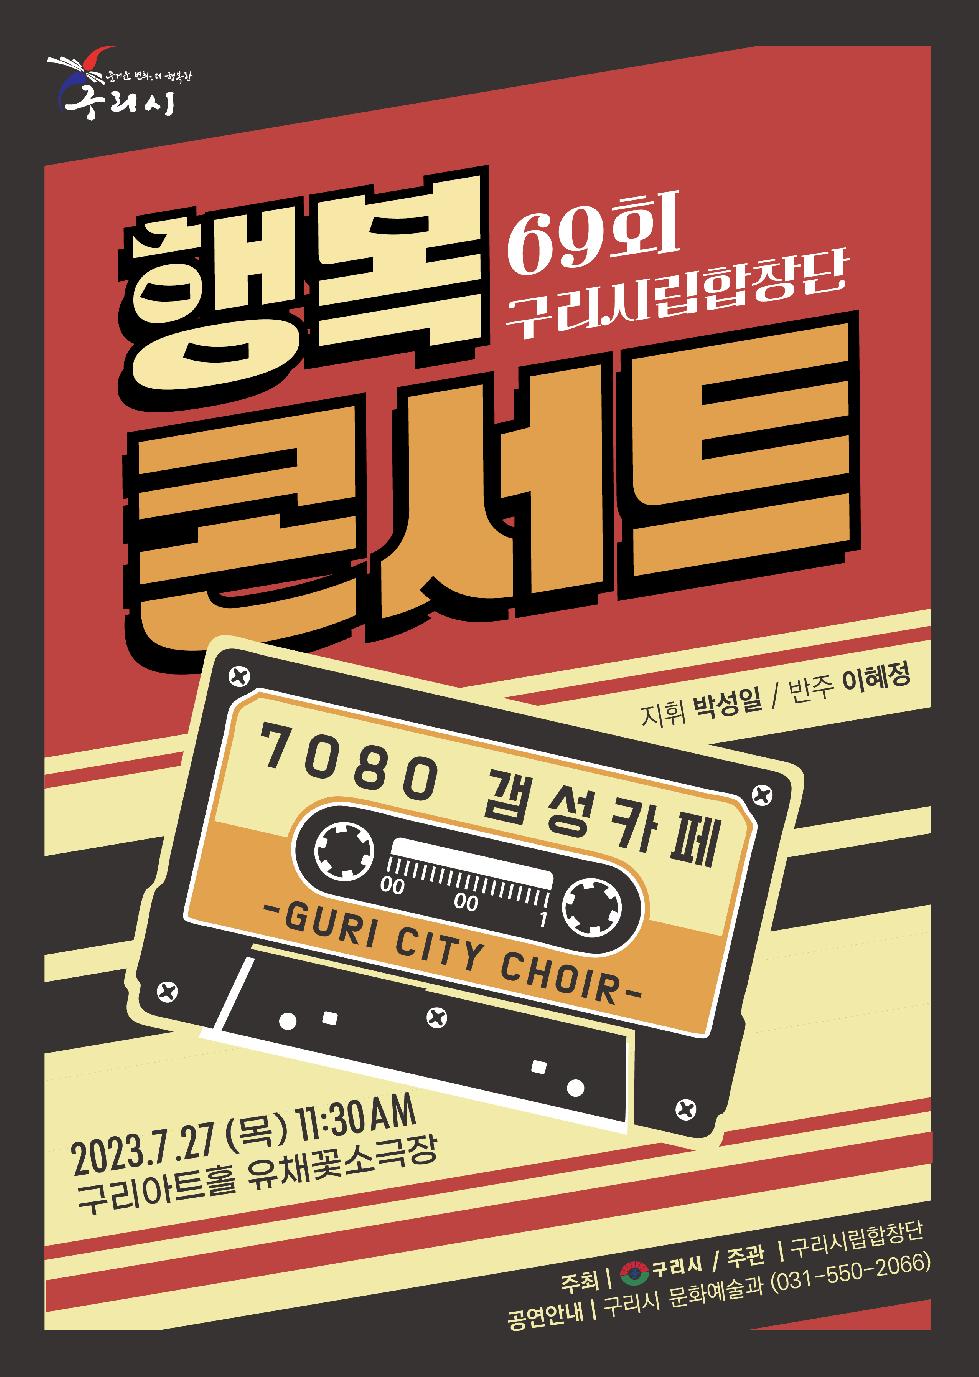 구리시립합창단, 제69회 행복콘서트 ‘7080 갬성카페’개최